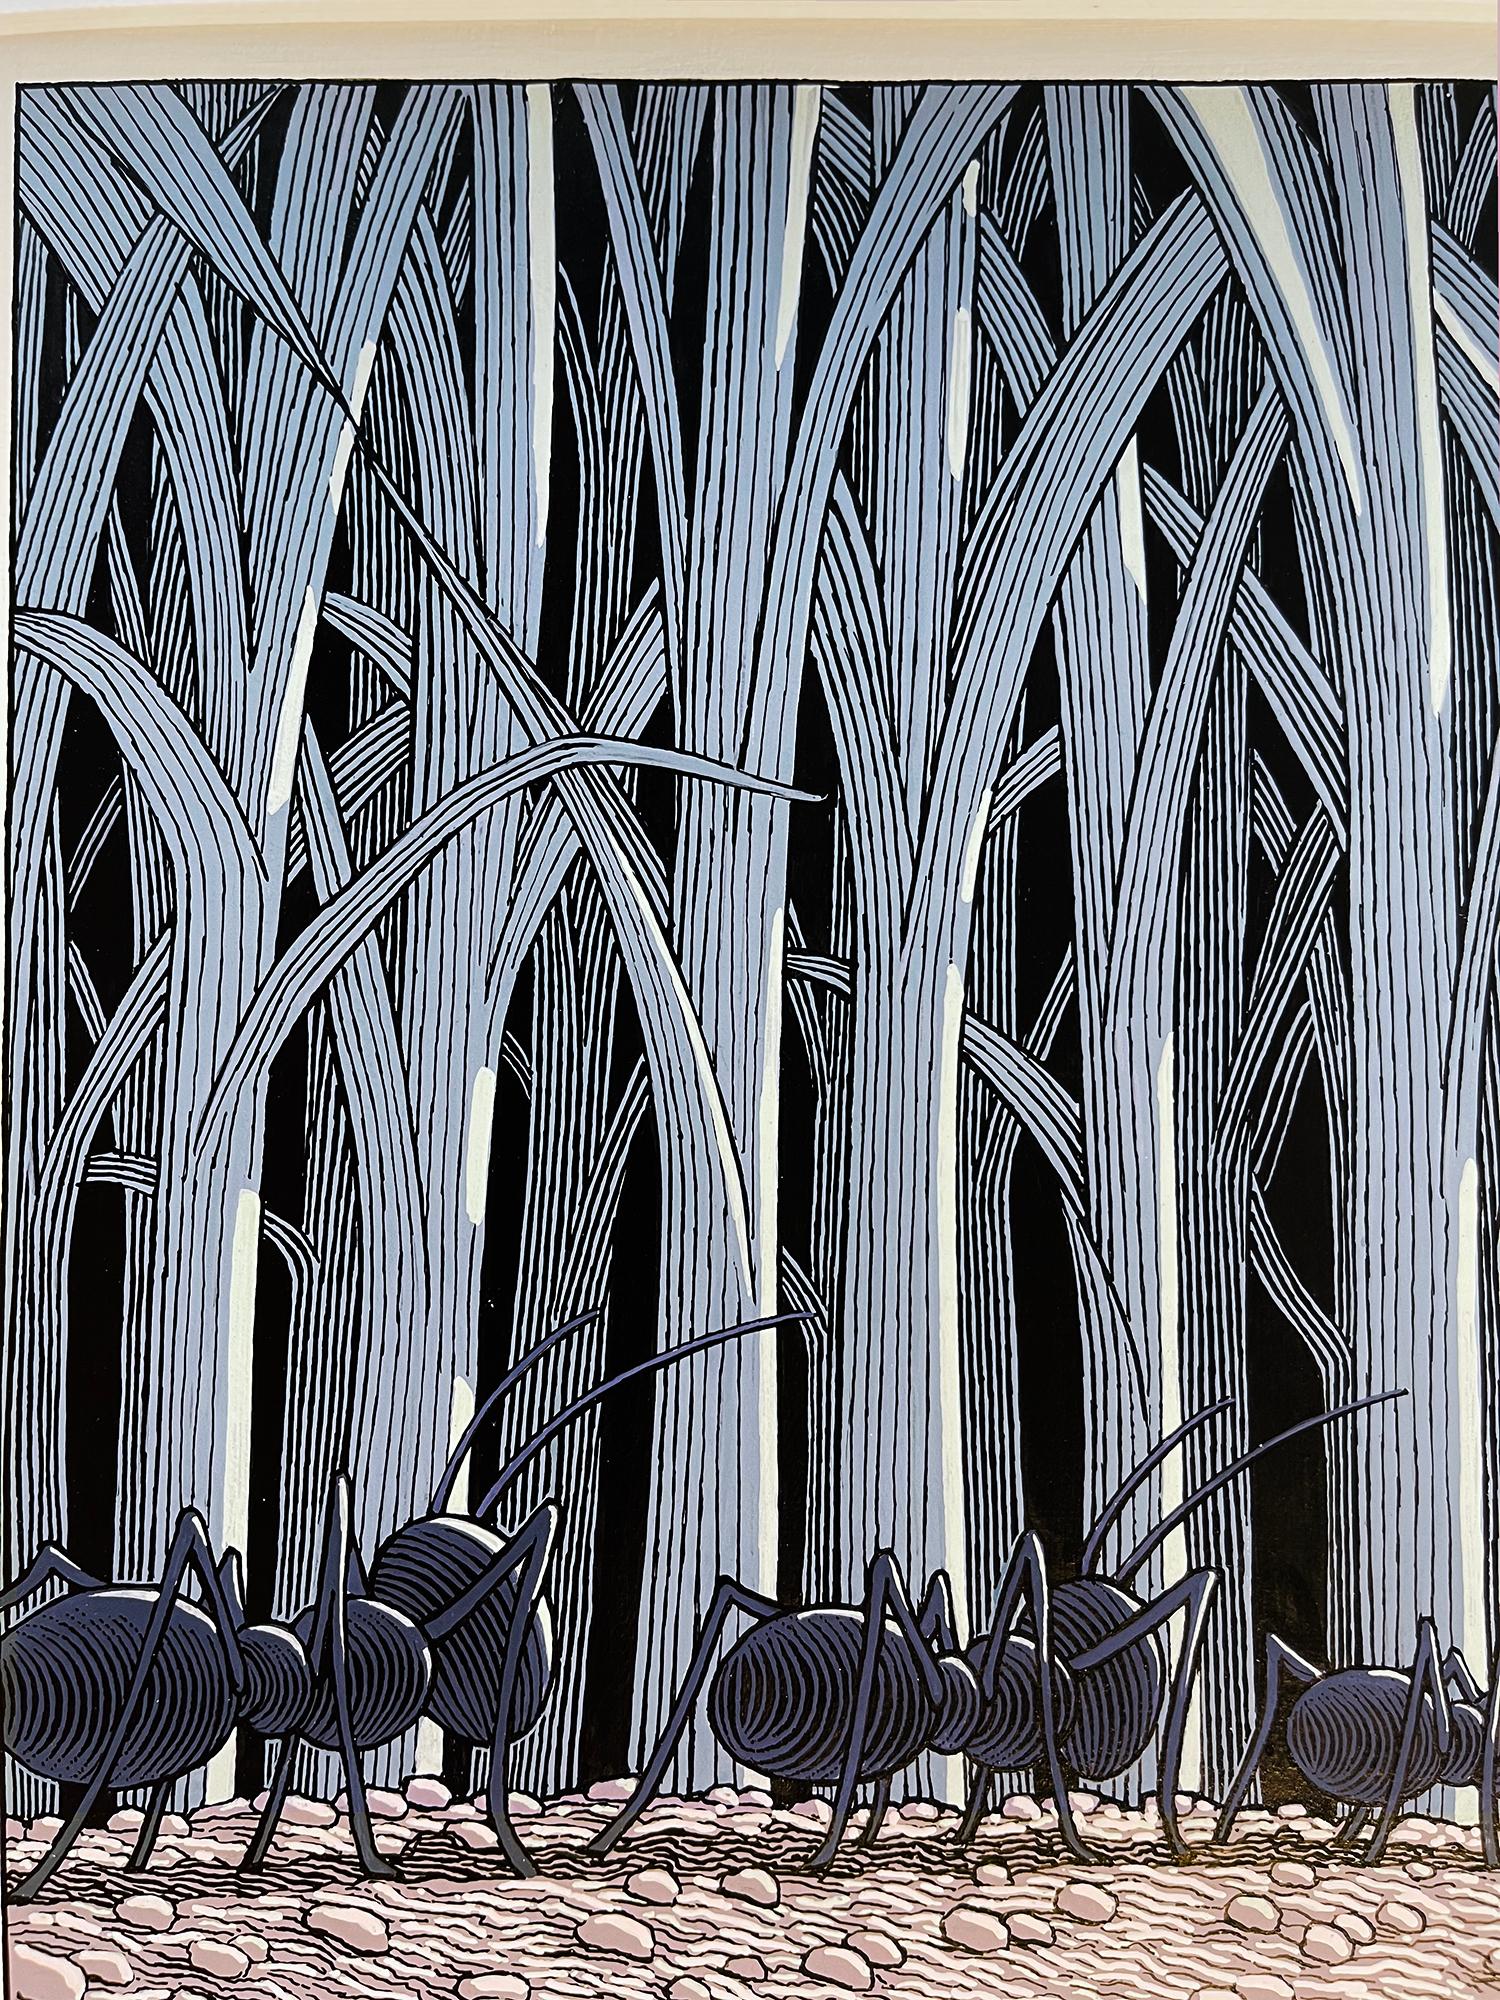 Ants marschierten in die Hölzer, die ihr unterirdisches Haus umgeben waren - Kinderbuch – Art von Chris Van Allsburg